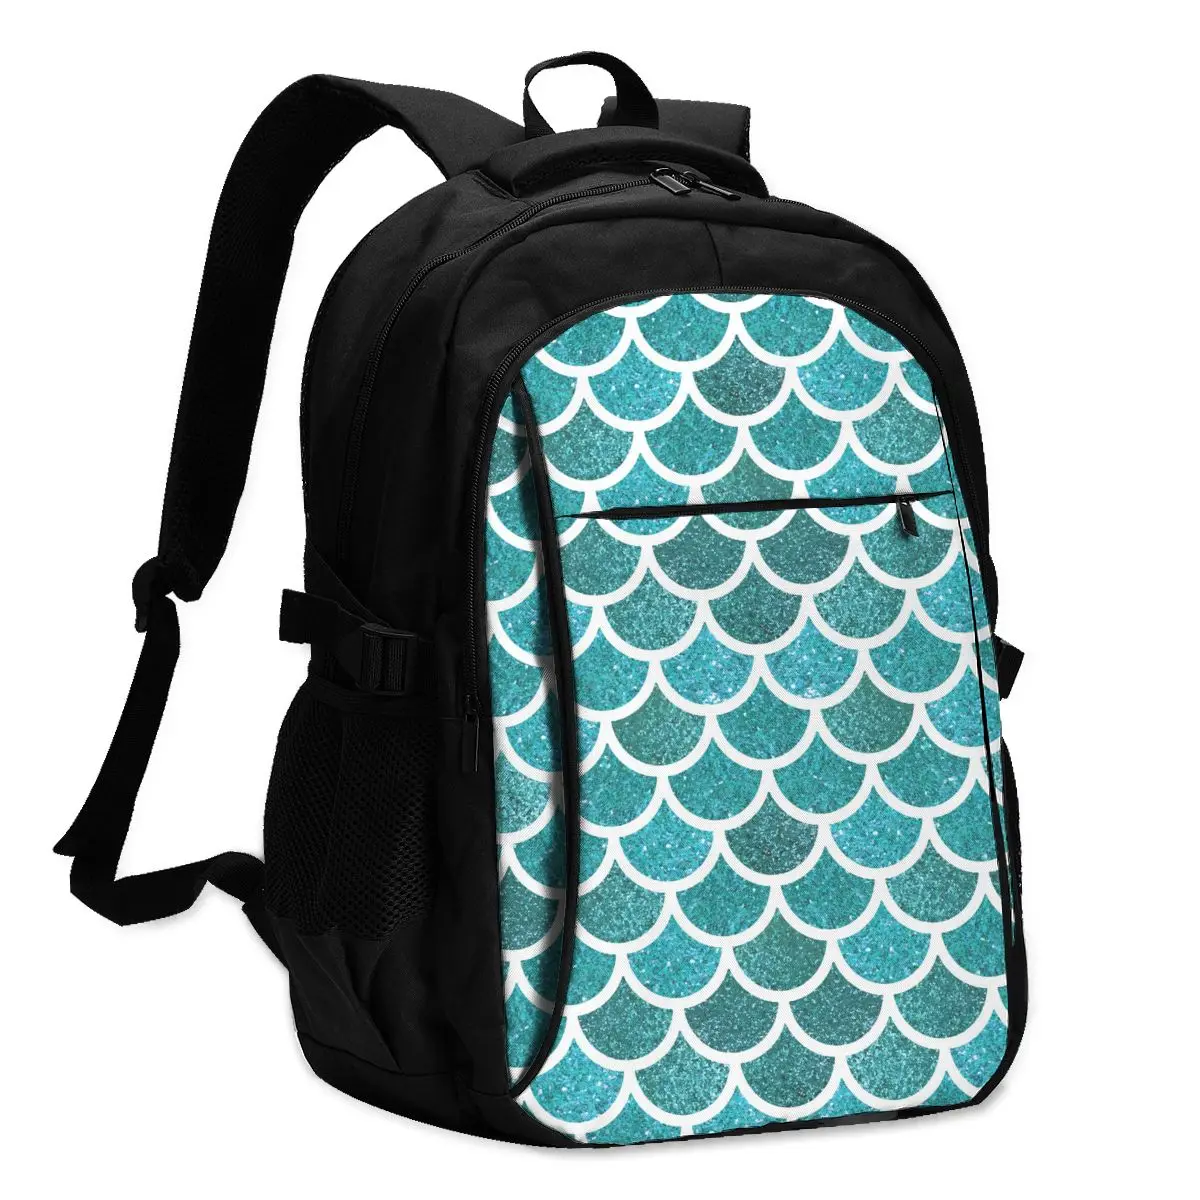 

2021 Прохладный печати ноутбук рюкзак цвета морской волны Русалка детские весы зарядка через USB путешествия Для женщин Мужской школьная сумк...